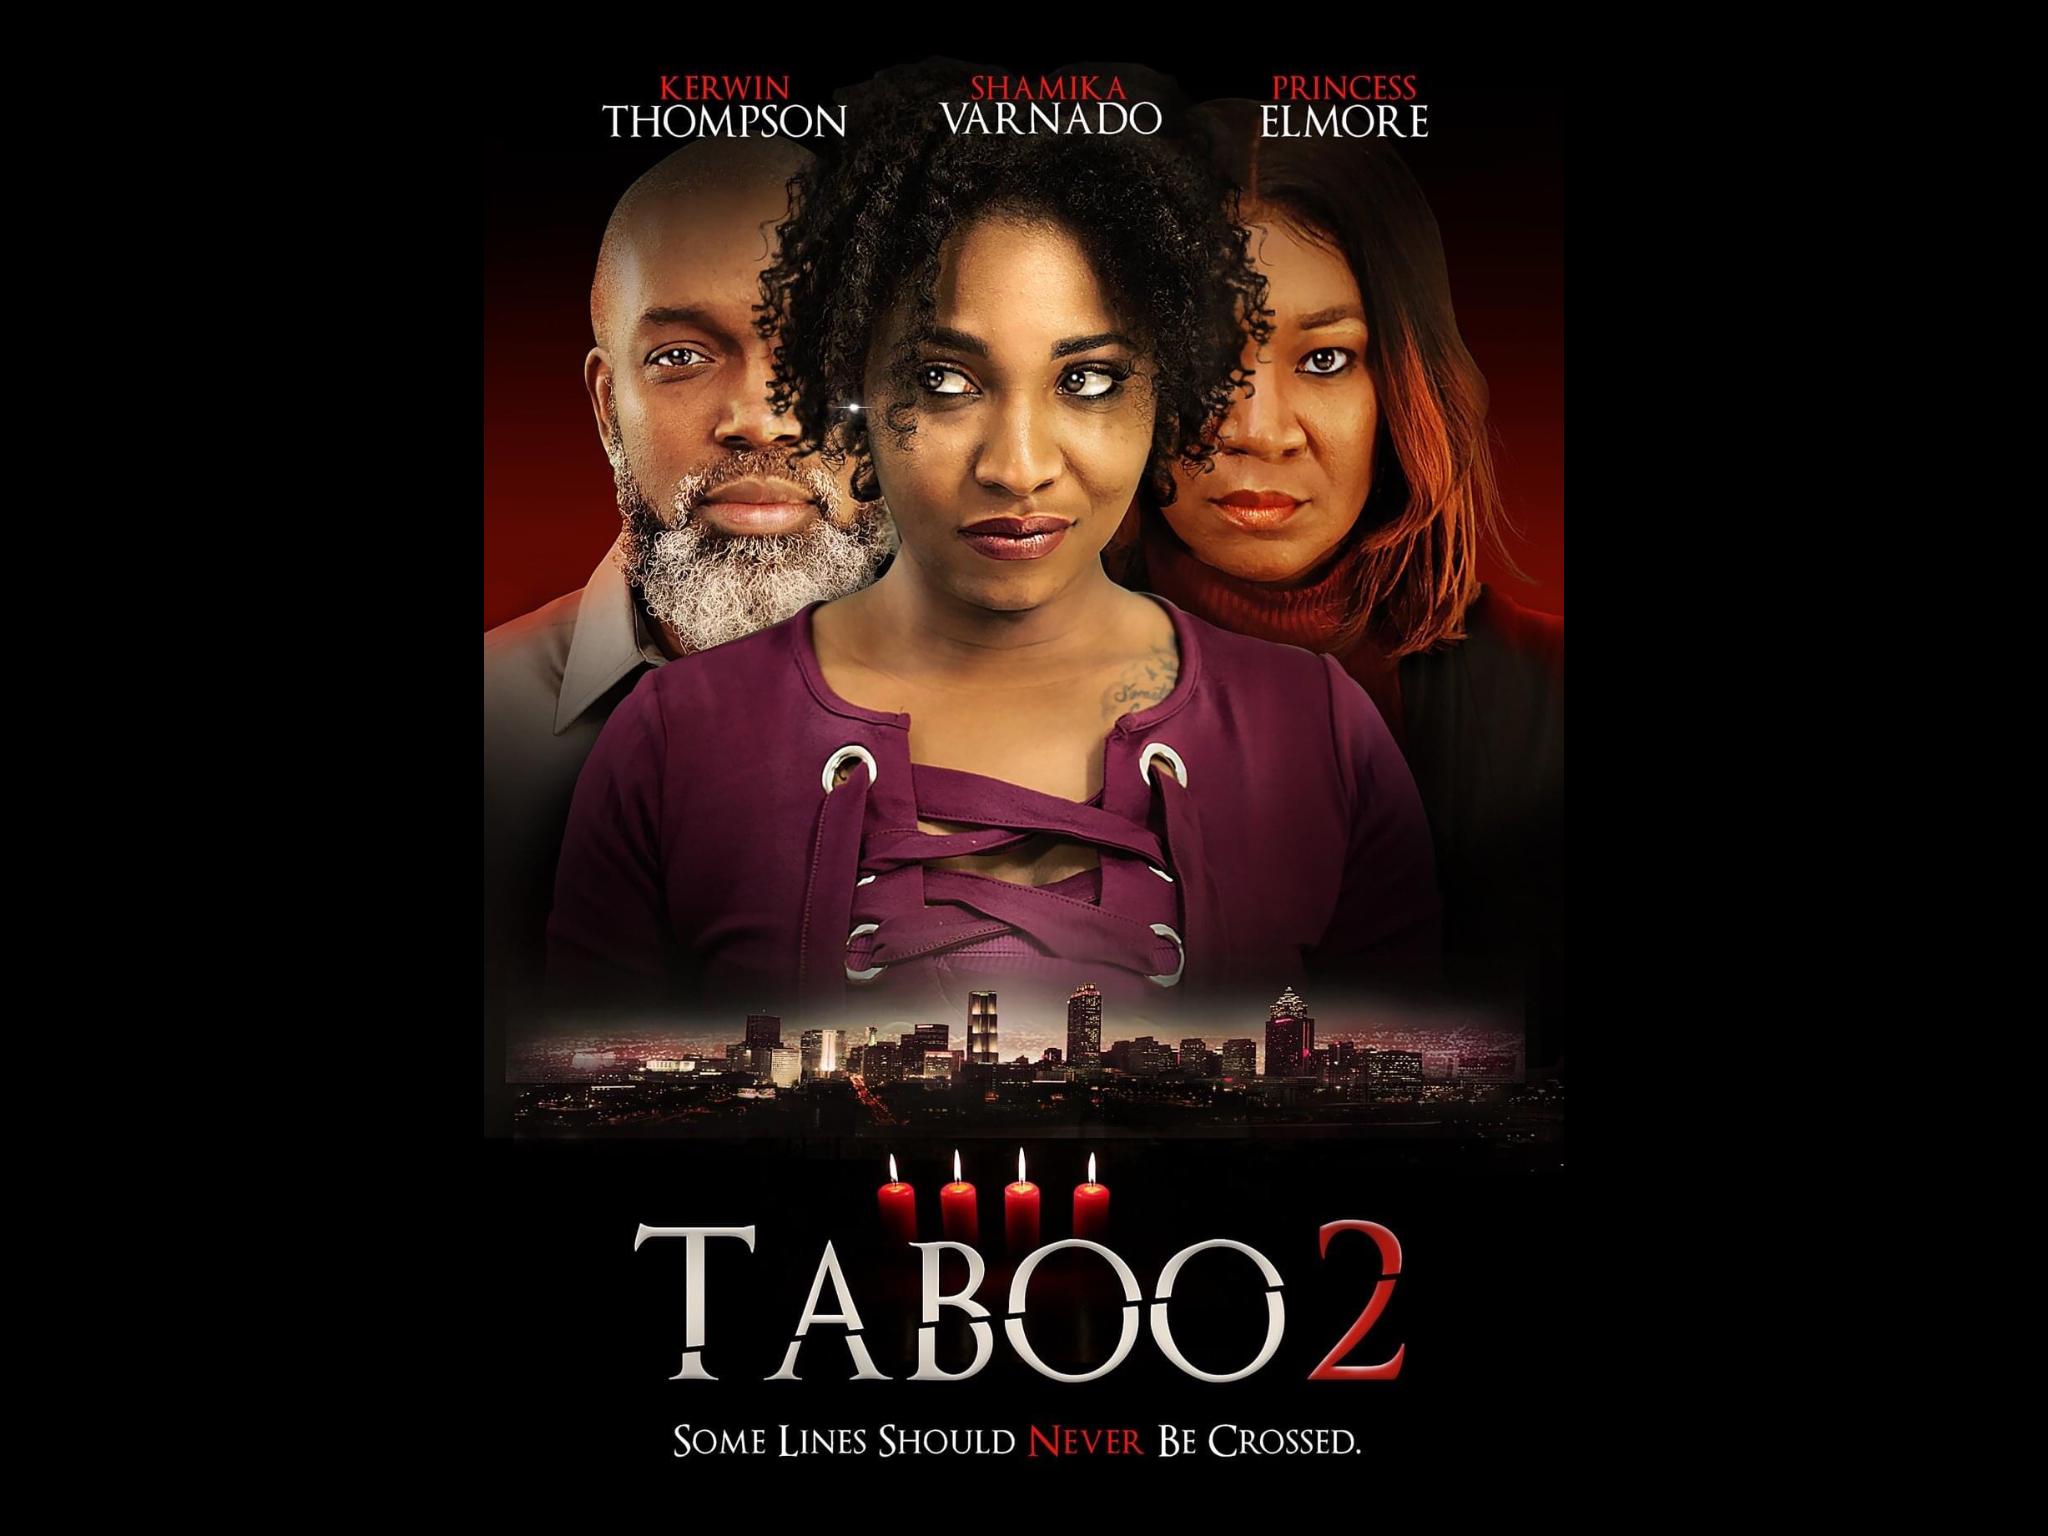 Taboo 2 (2019)